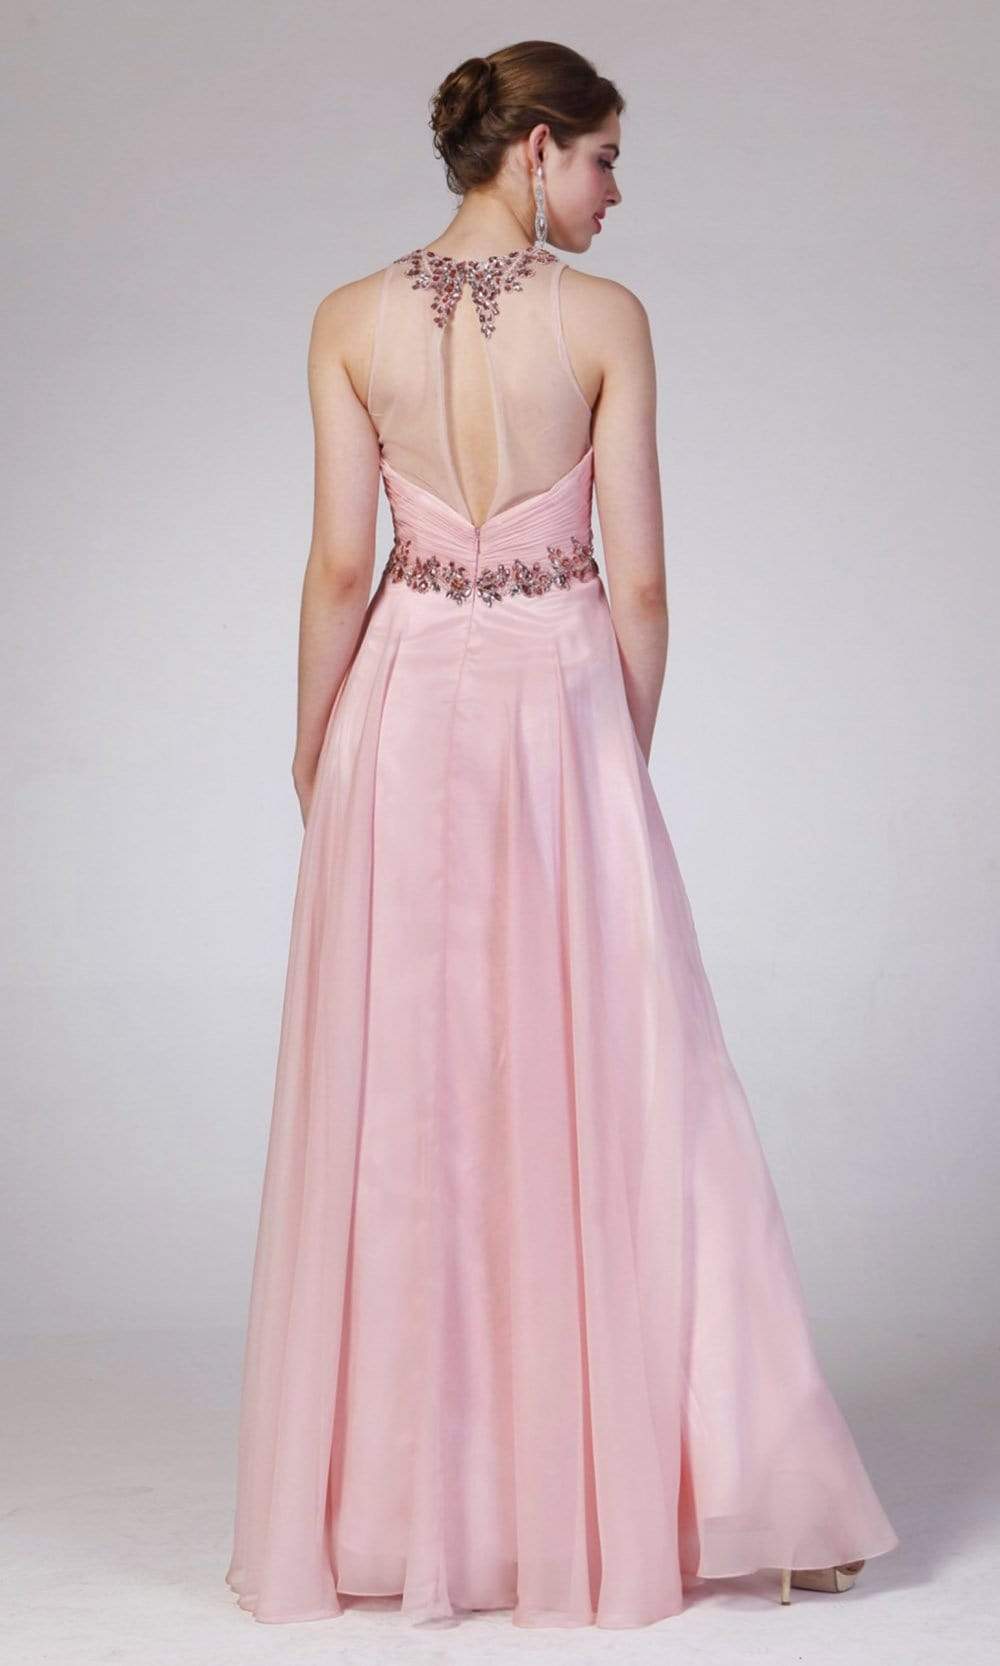 Cinderella Divine - 8773 Rhinestone Embellished A-Line Dress Evening Dresses